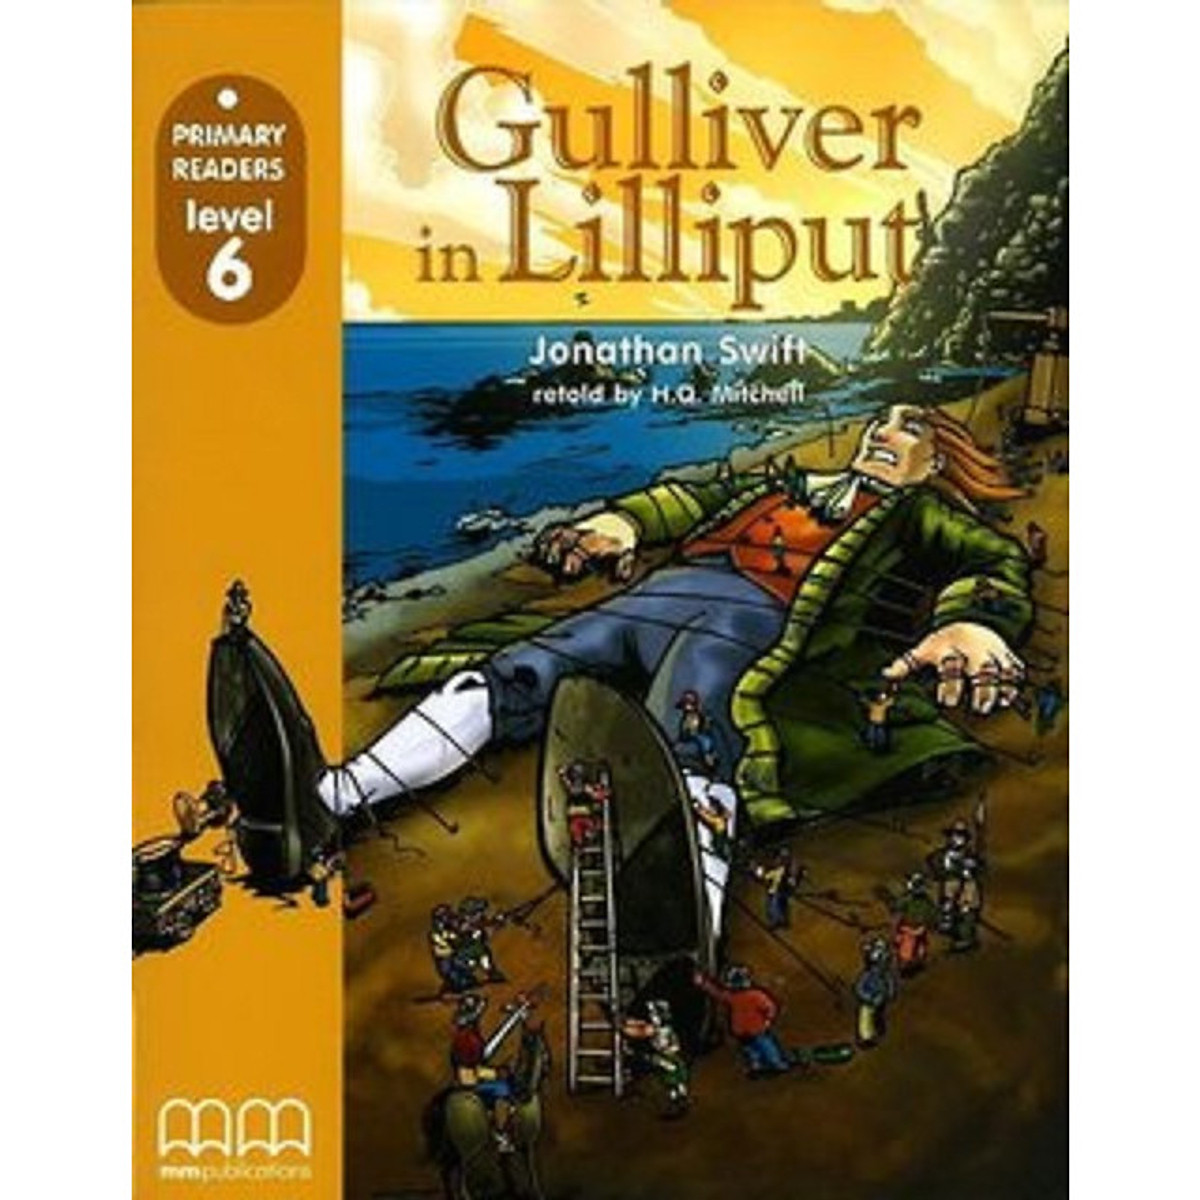 MM Publications: Truyện luyện đọc tiếng Anh theo trình độ - Gulliver In Lilliput (Without Cd-Rom) - British Edition